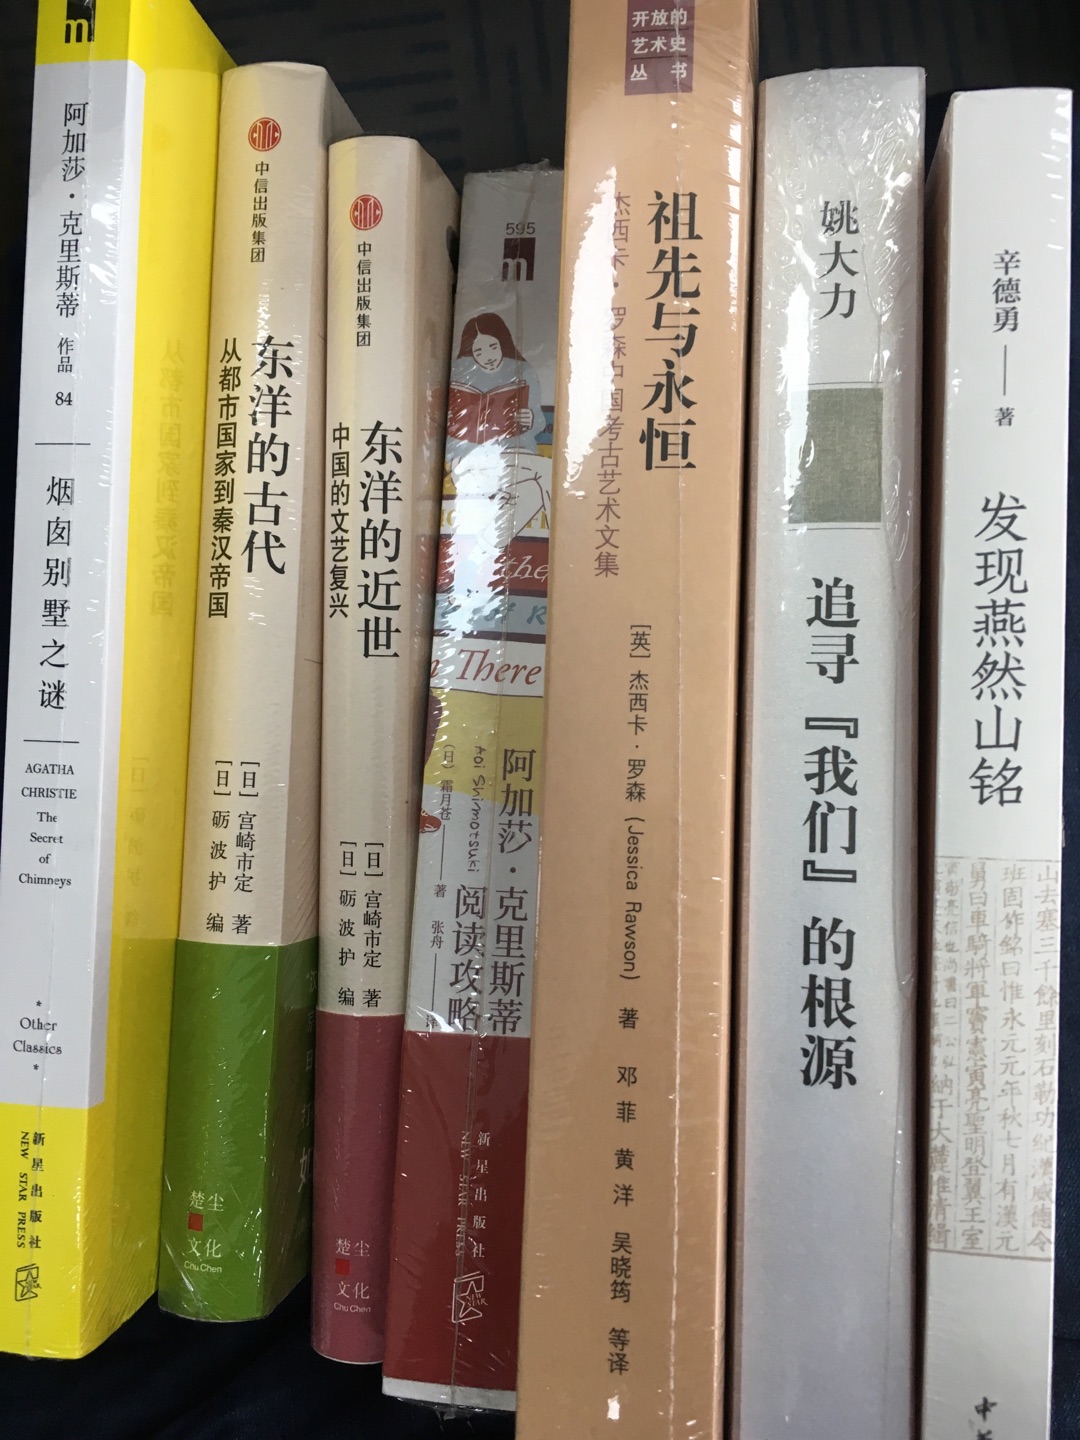 将中国历史分为古代、中世纪、近世是内藤湖南以来的京都学派的主要特征，而对中世、近世的研究，宫崎市定主要是对老师内藤的继承和发展，而对于古代，则多为其独创，尤其是“都市国家”的理论，很有创见。